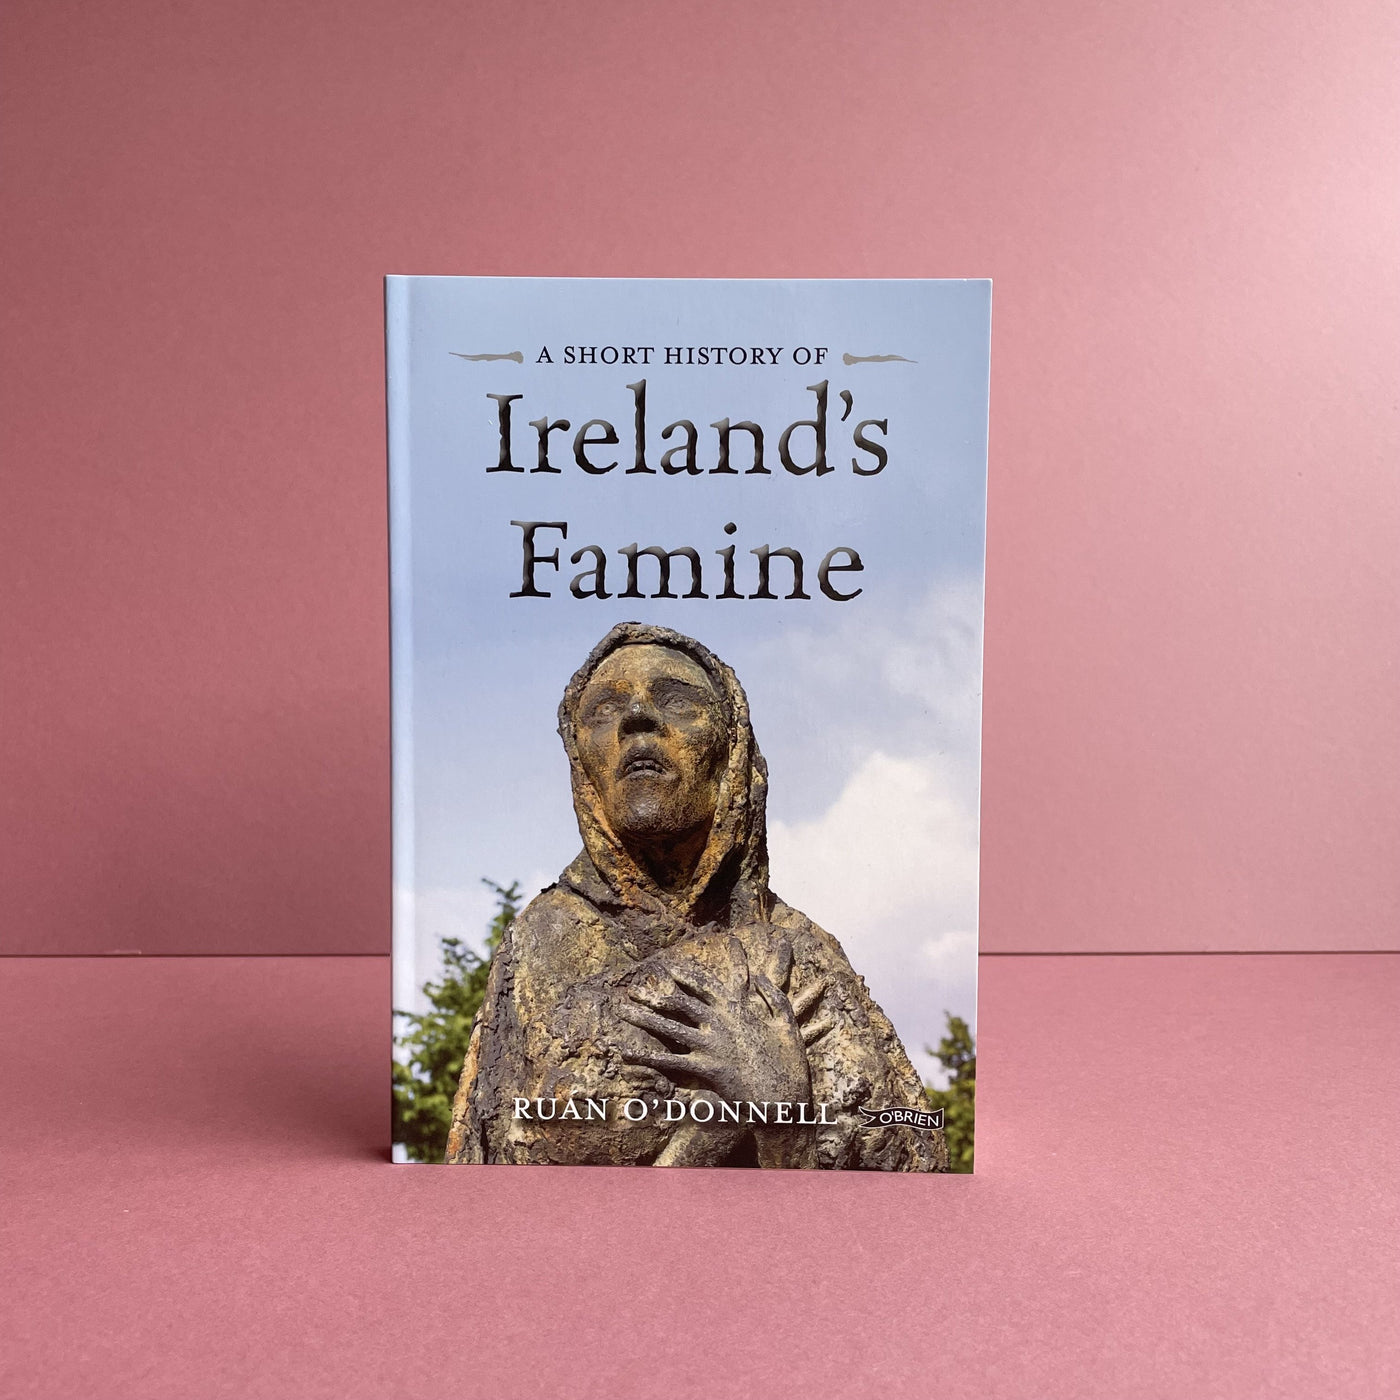 A Short History of Ireland's Famine